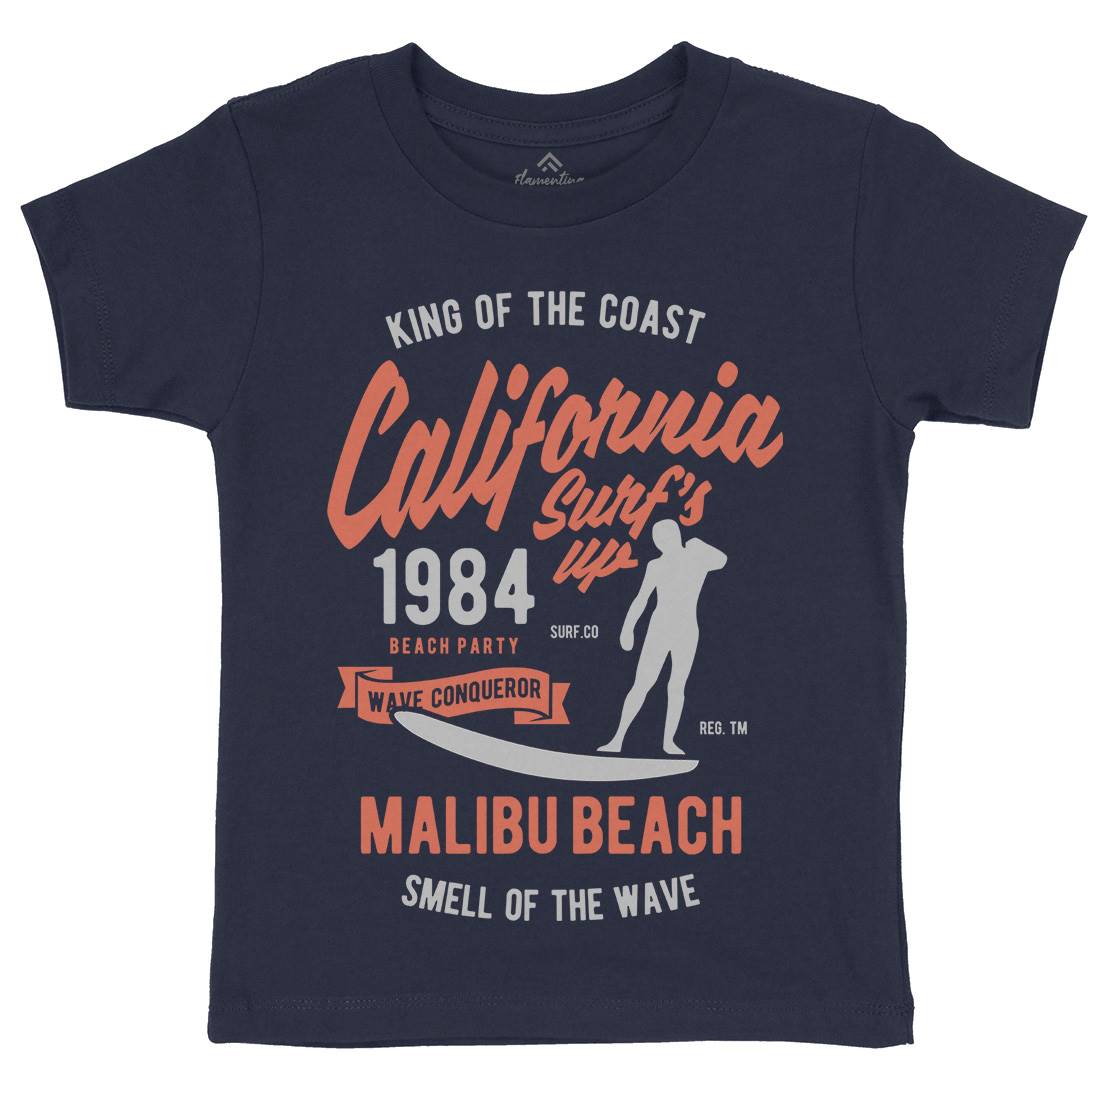 California Surfs Up Kids Crew Neck T-Shirt Surf B389